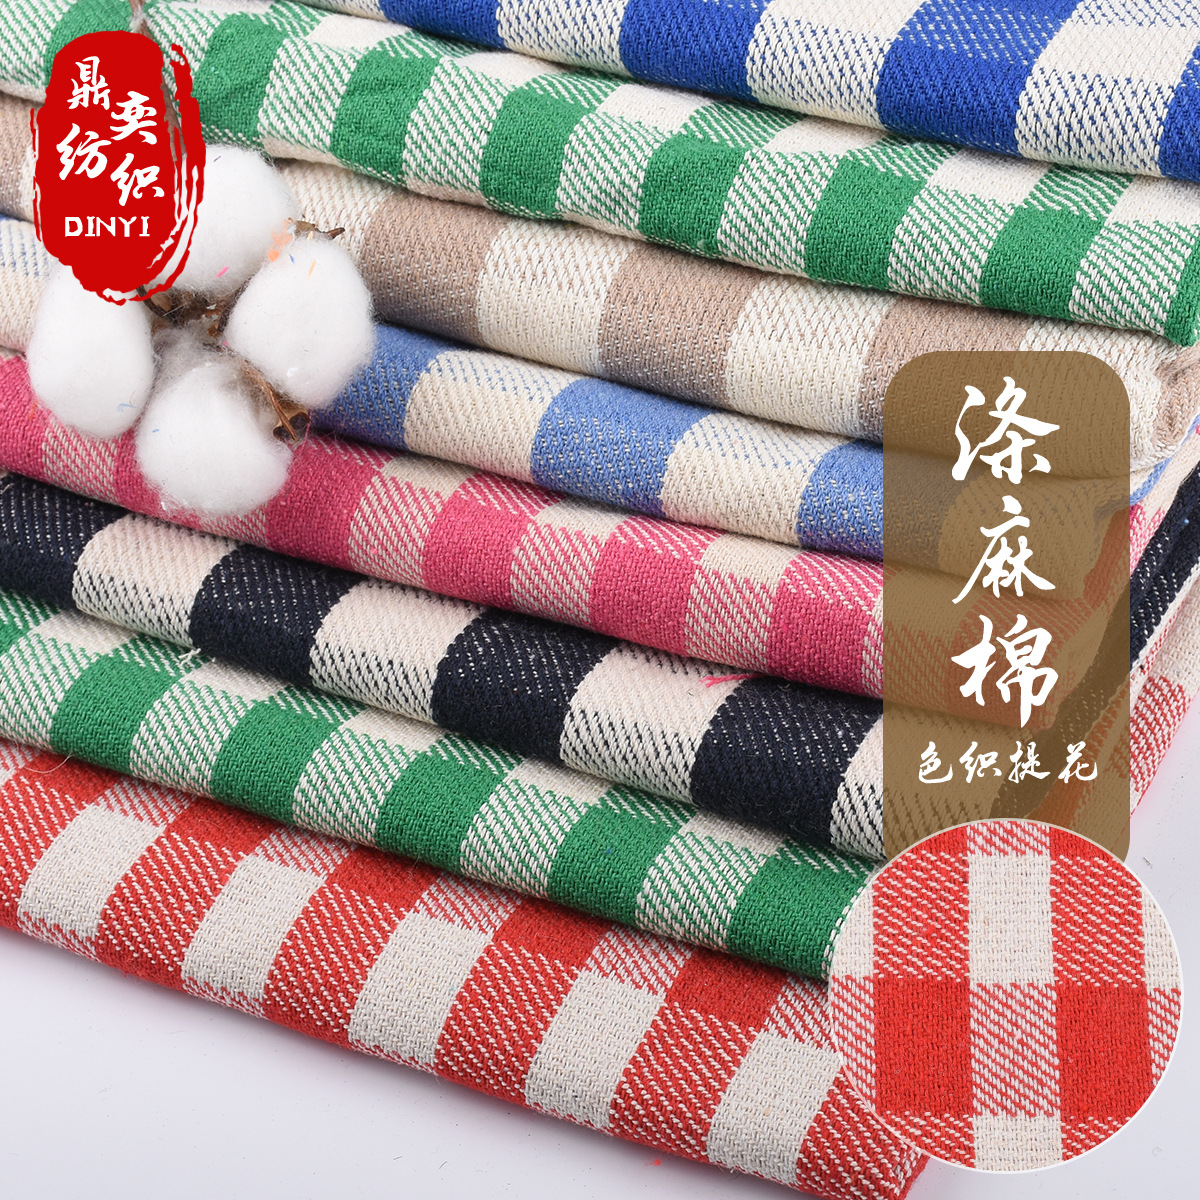 广东厂家现货直供抱枕手袋沙发坐垫布料 提花色织色织麻布面料